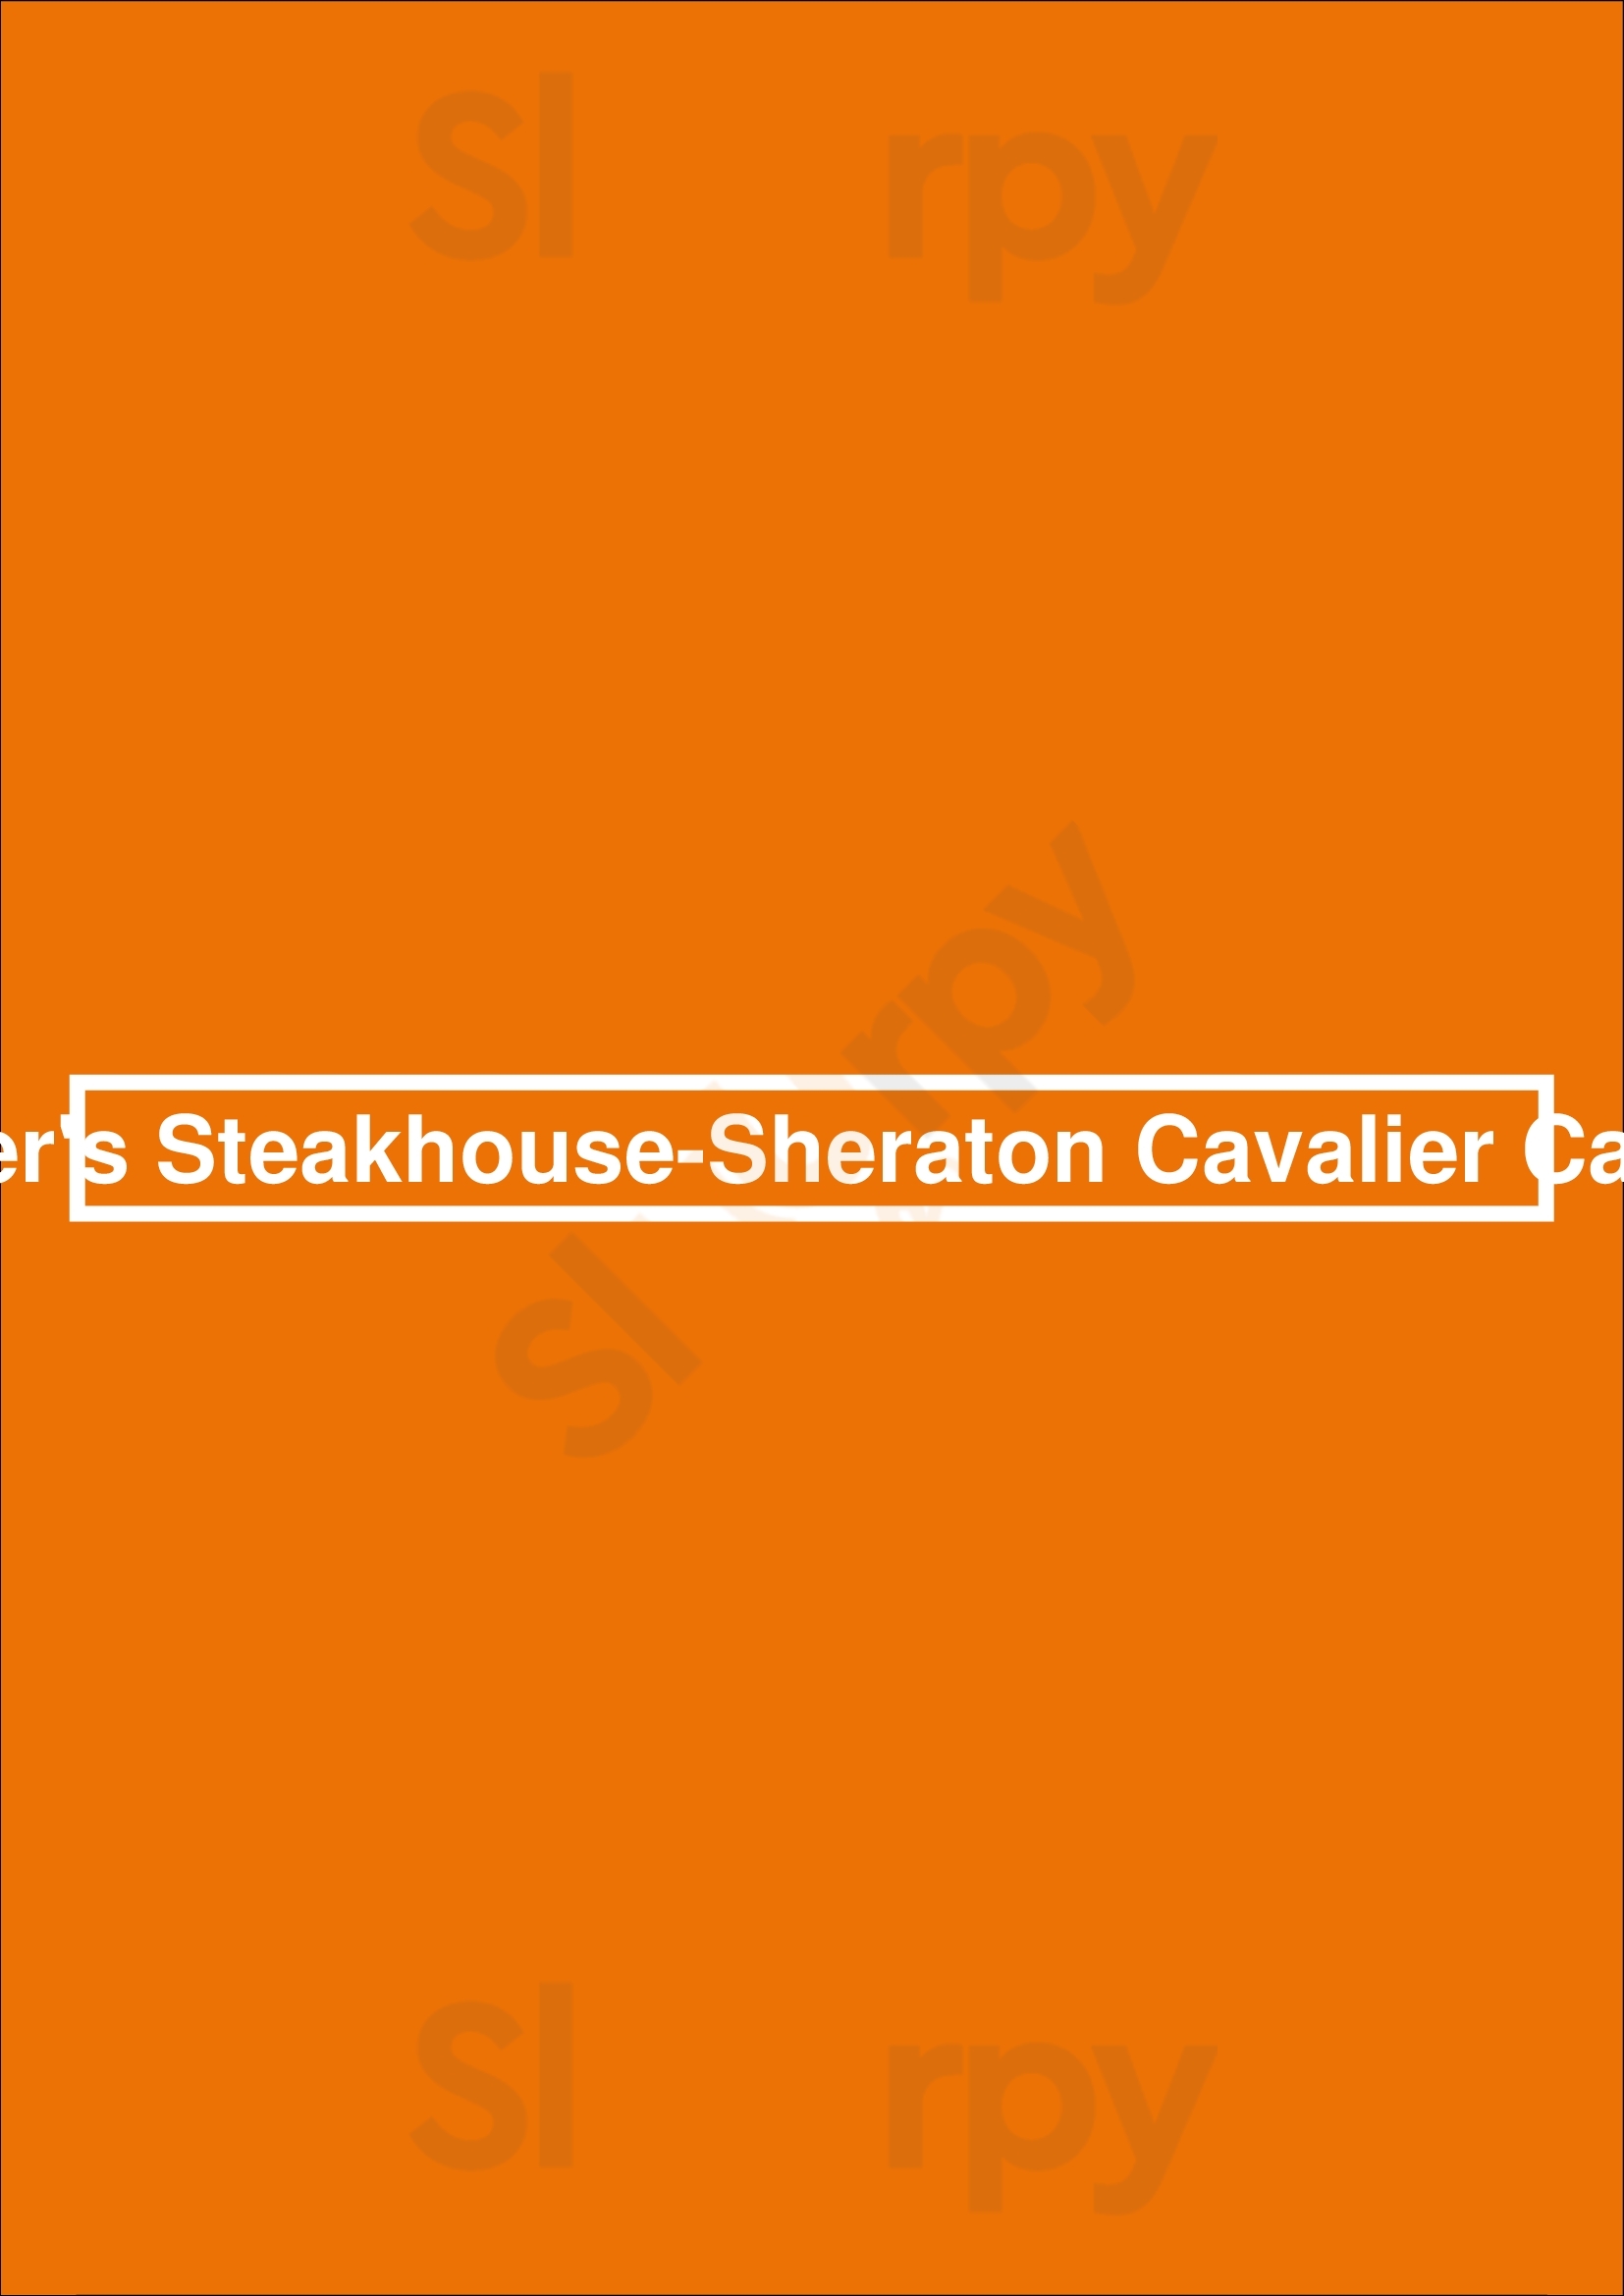 Carver's Steakhouse-sheraton Cavalier Calgary Calgary Menu - 1